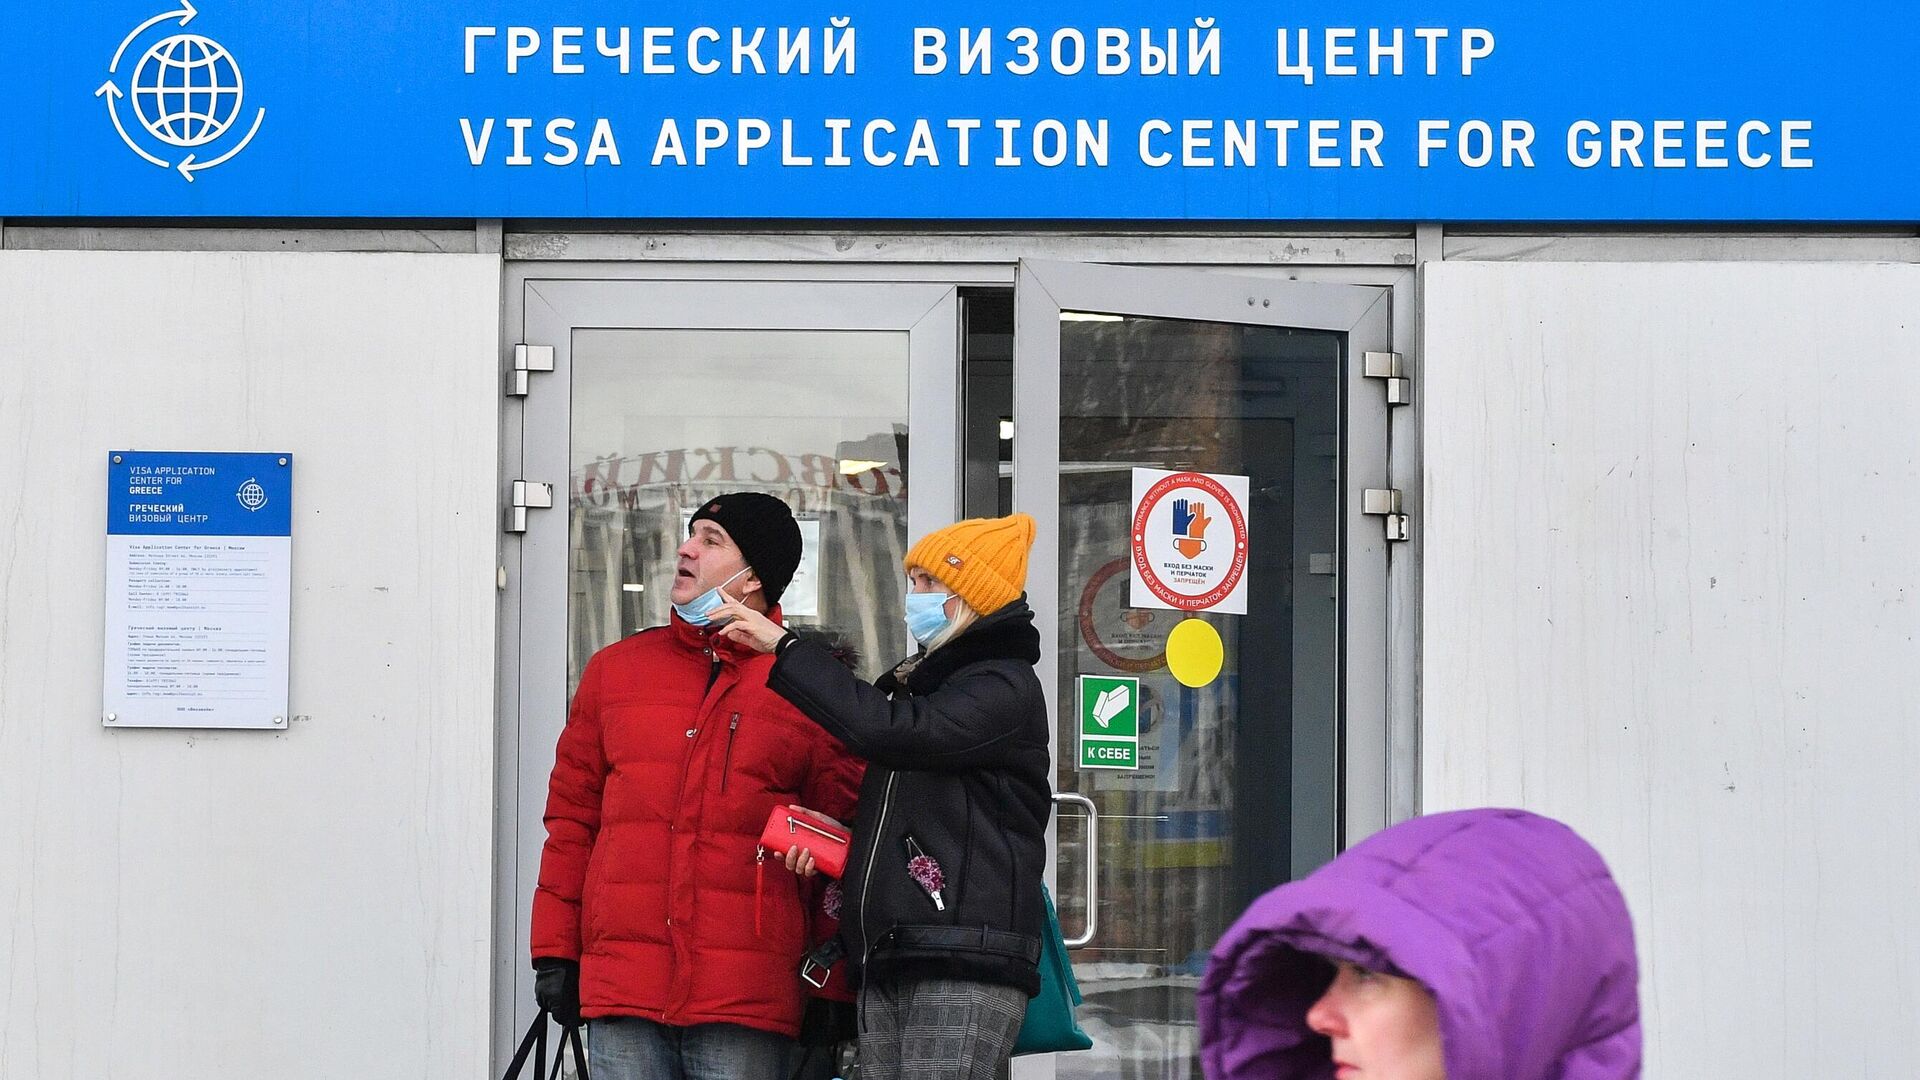 открыты ли визовые центры в санкт петербурге